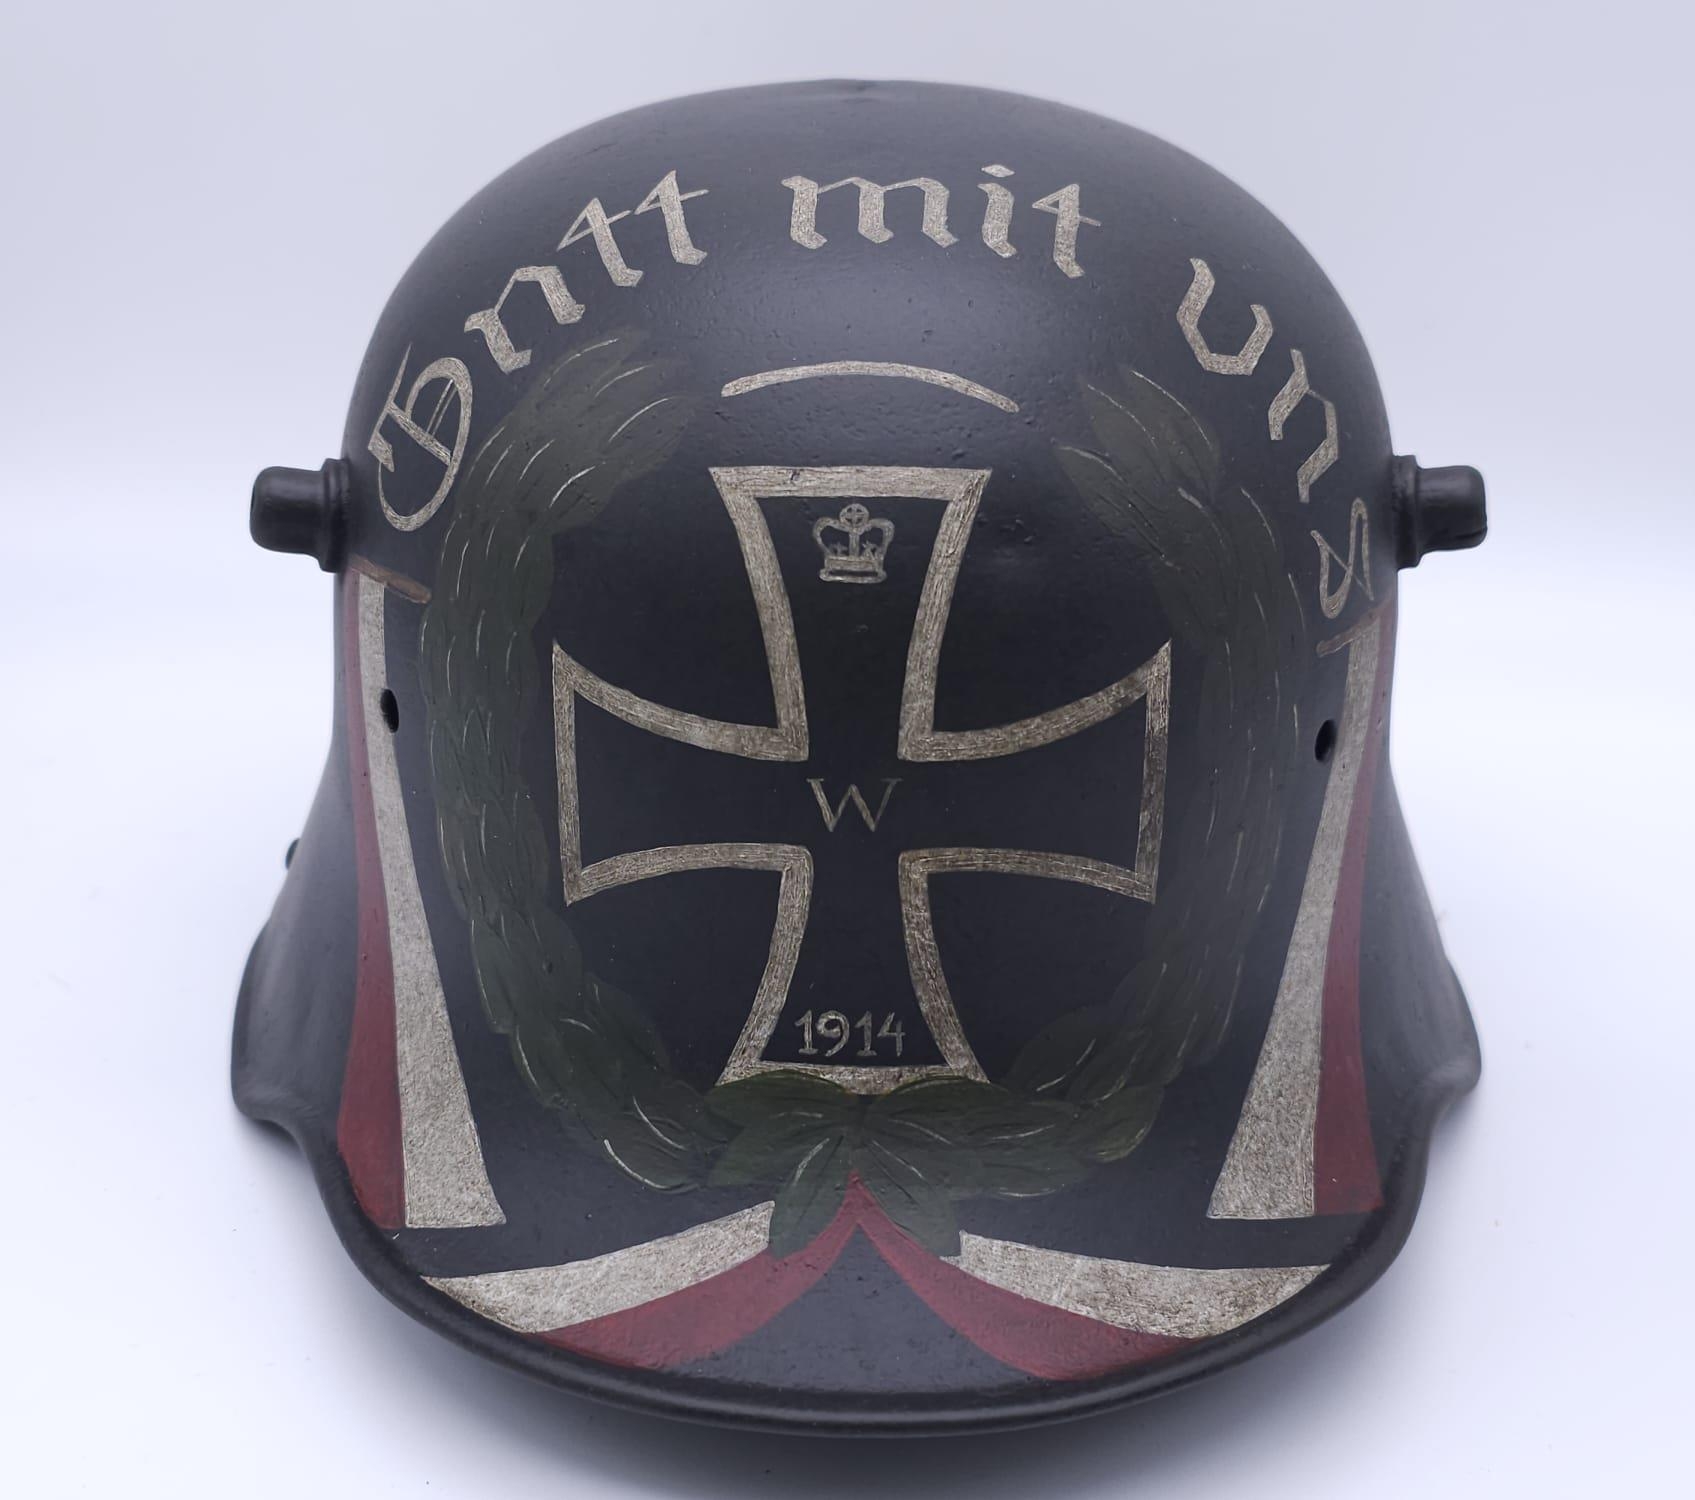 WW1 German Memorial Helmet. Original WW1 German Stahlhelm helmet with post ..War memorial painting. - Image 3 of 7